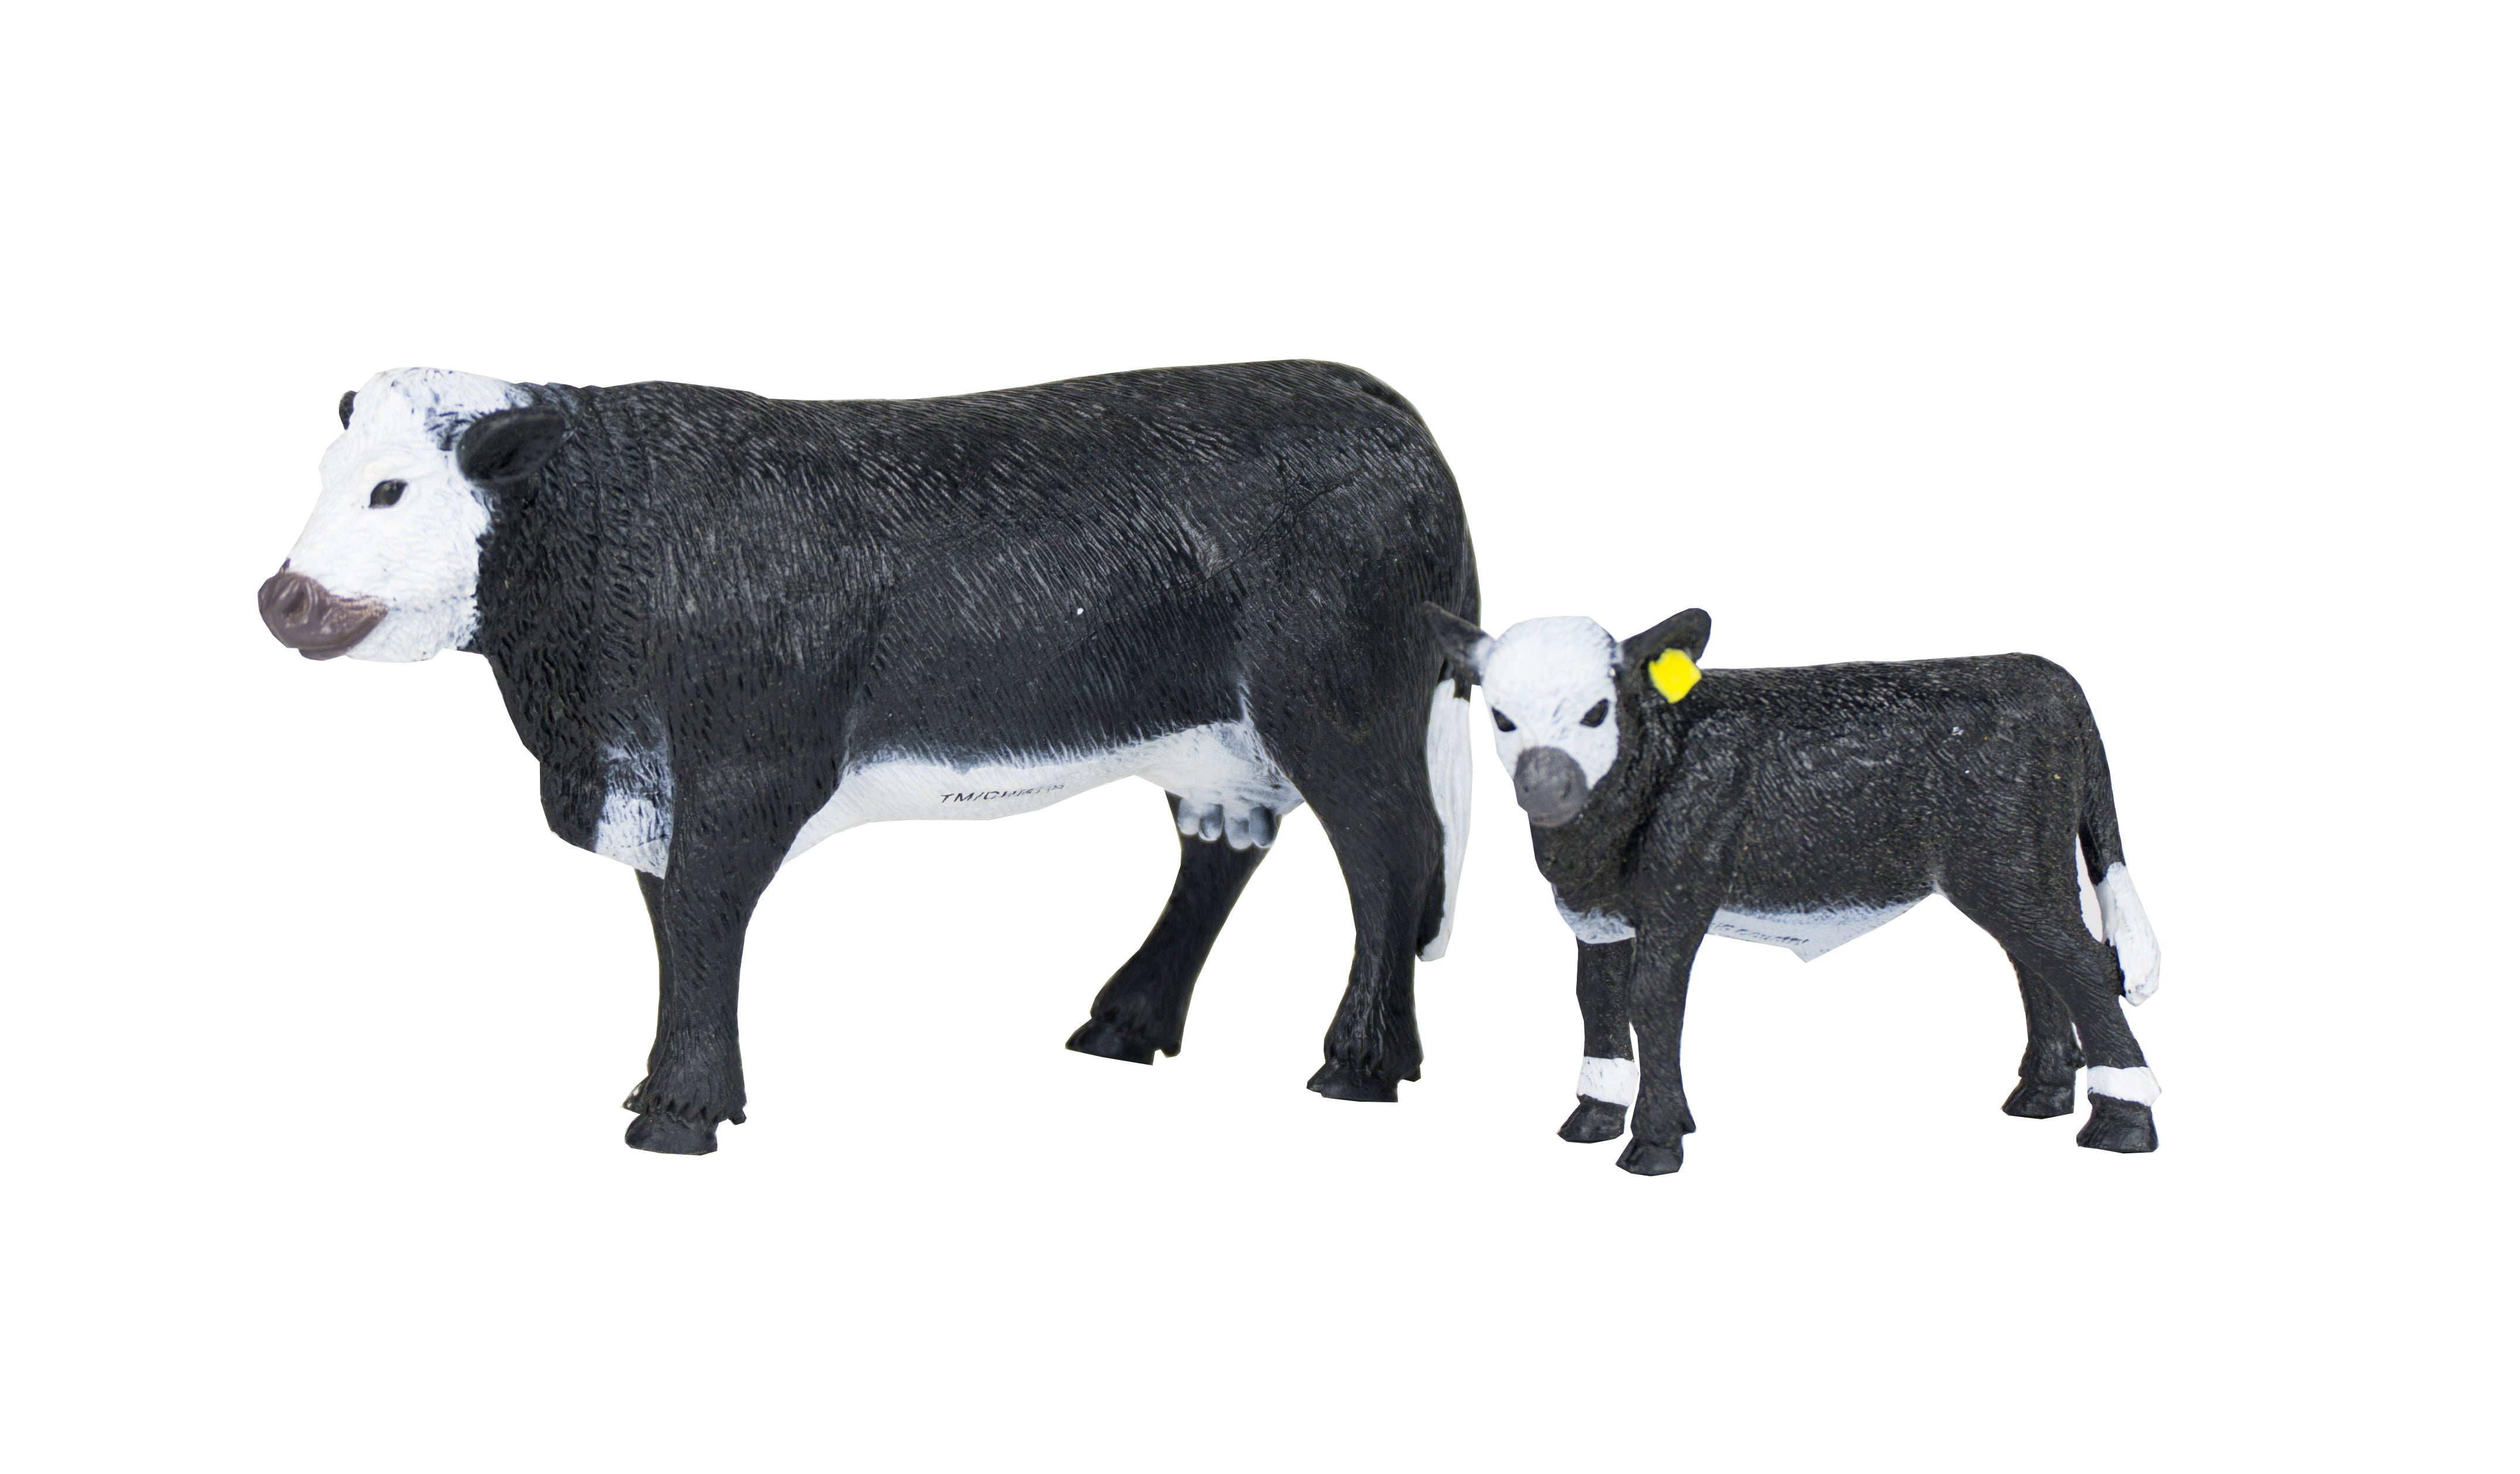 1 black baldy cow & calf pair - 2